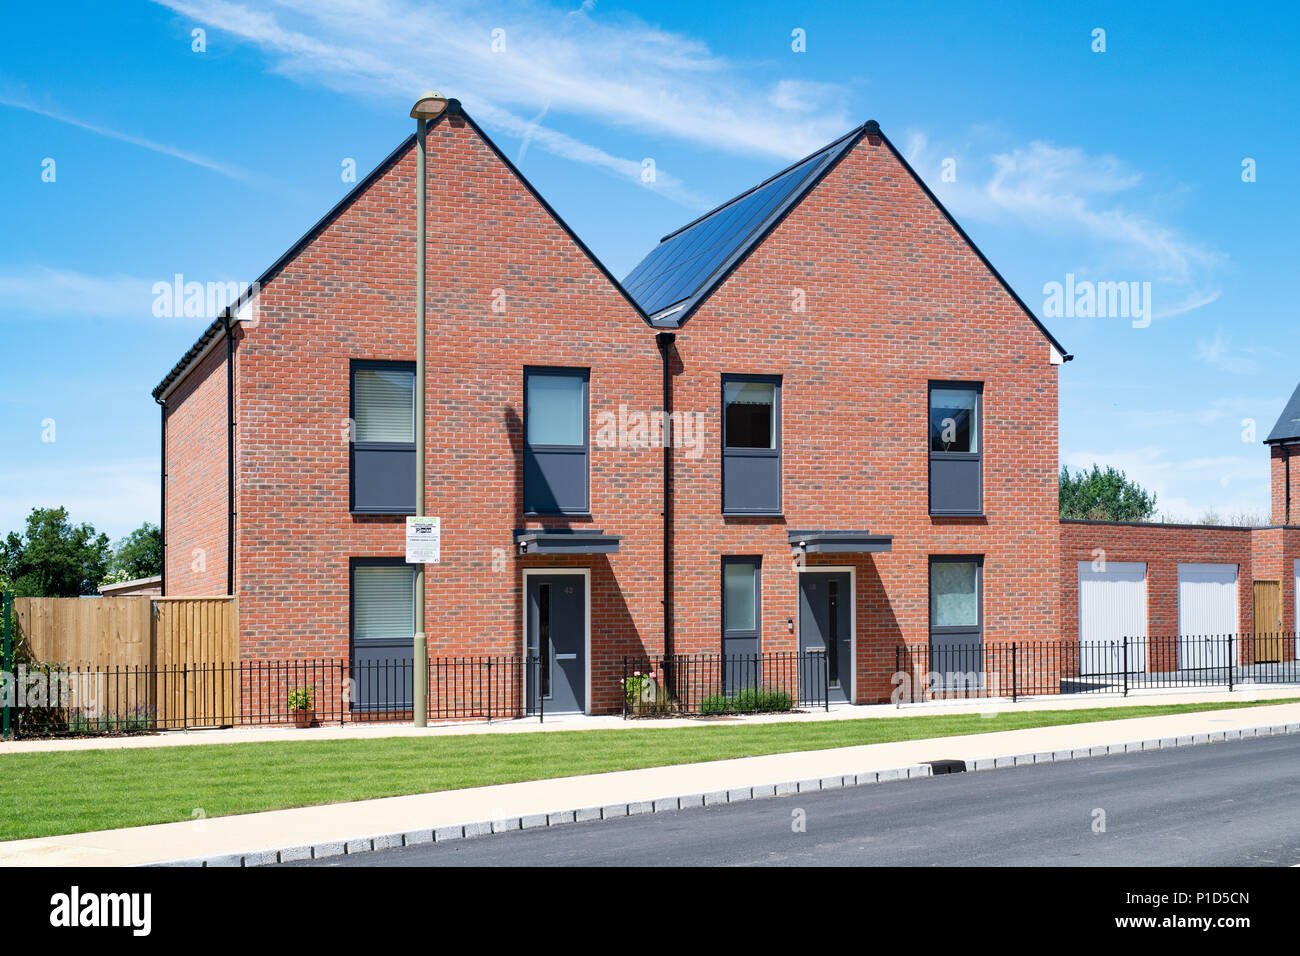 Moderne, nachhaltige Lebensweise. Elmsbrook Eco Stadthäuser in Nord-West Bicester, Oxfordshire, England Stockfoto